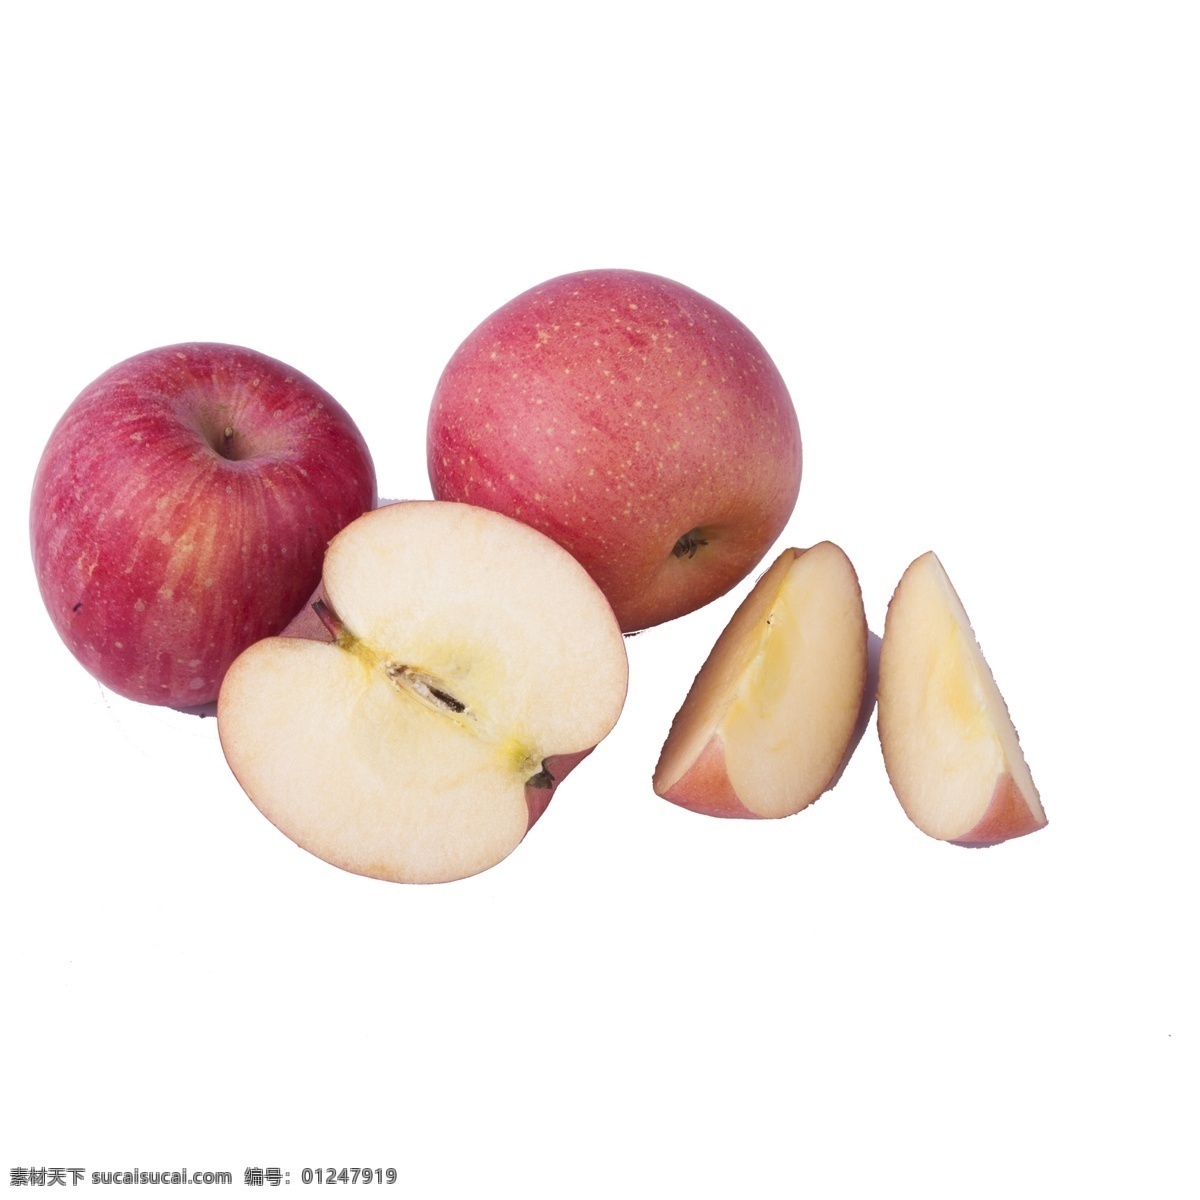 红色 苹果 免 抠 图 新鲜水果 红通通 美味的苹果 生态水果 植物果实 切开的苹果 红色的苹果 免抠图